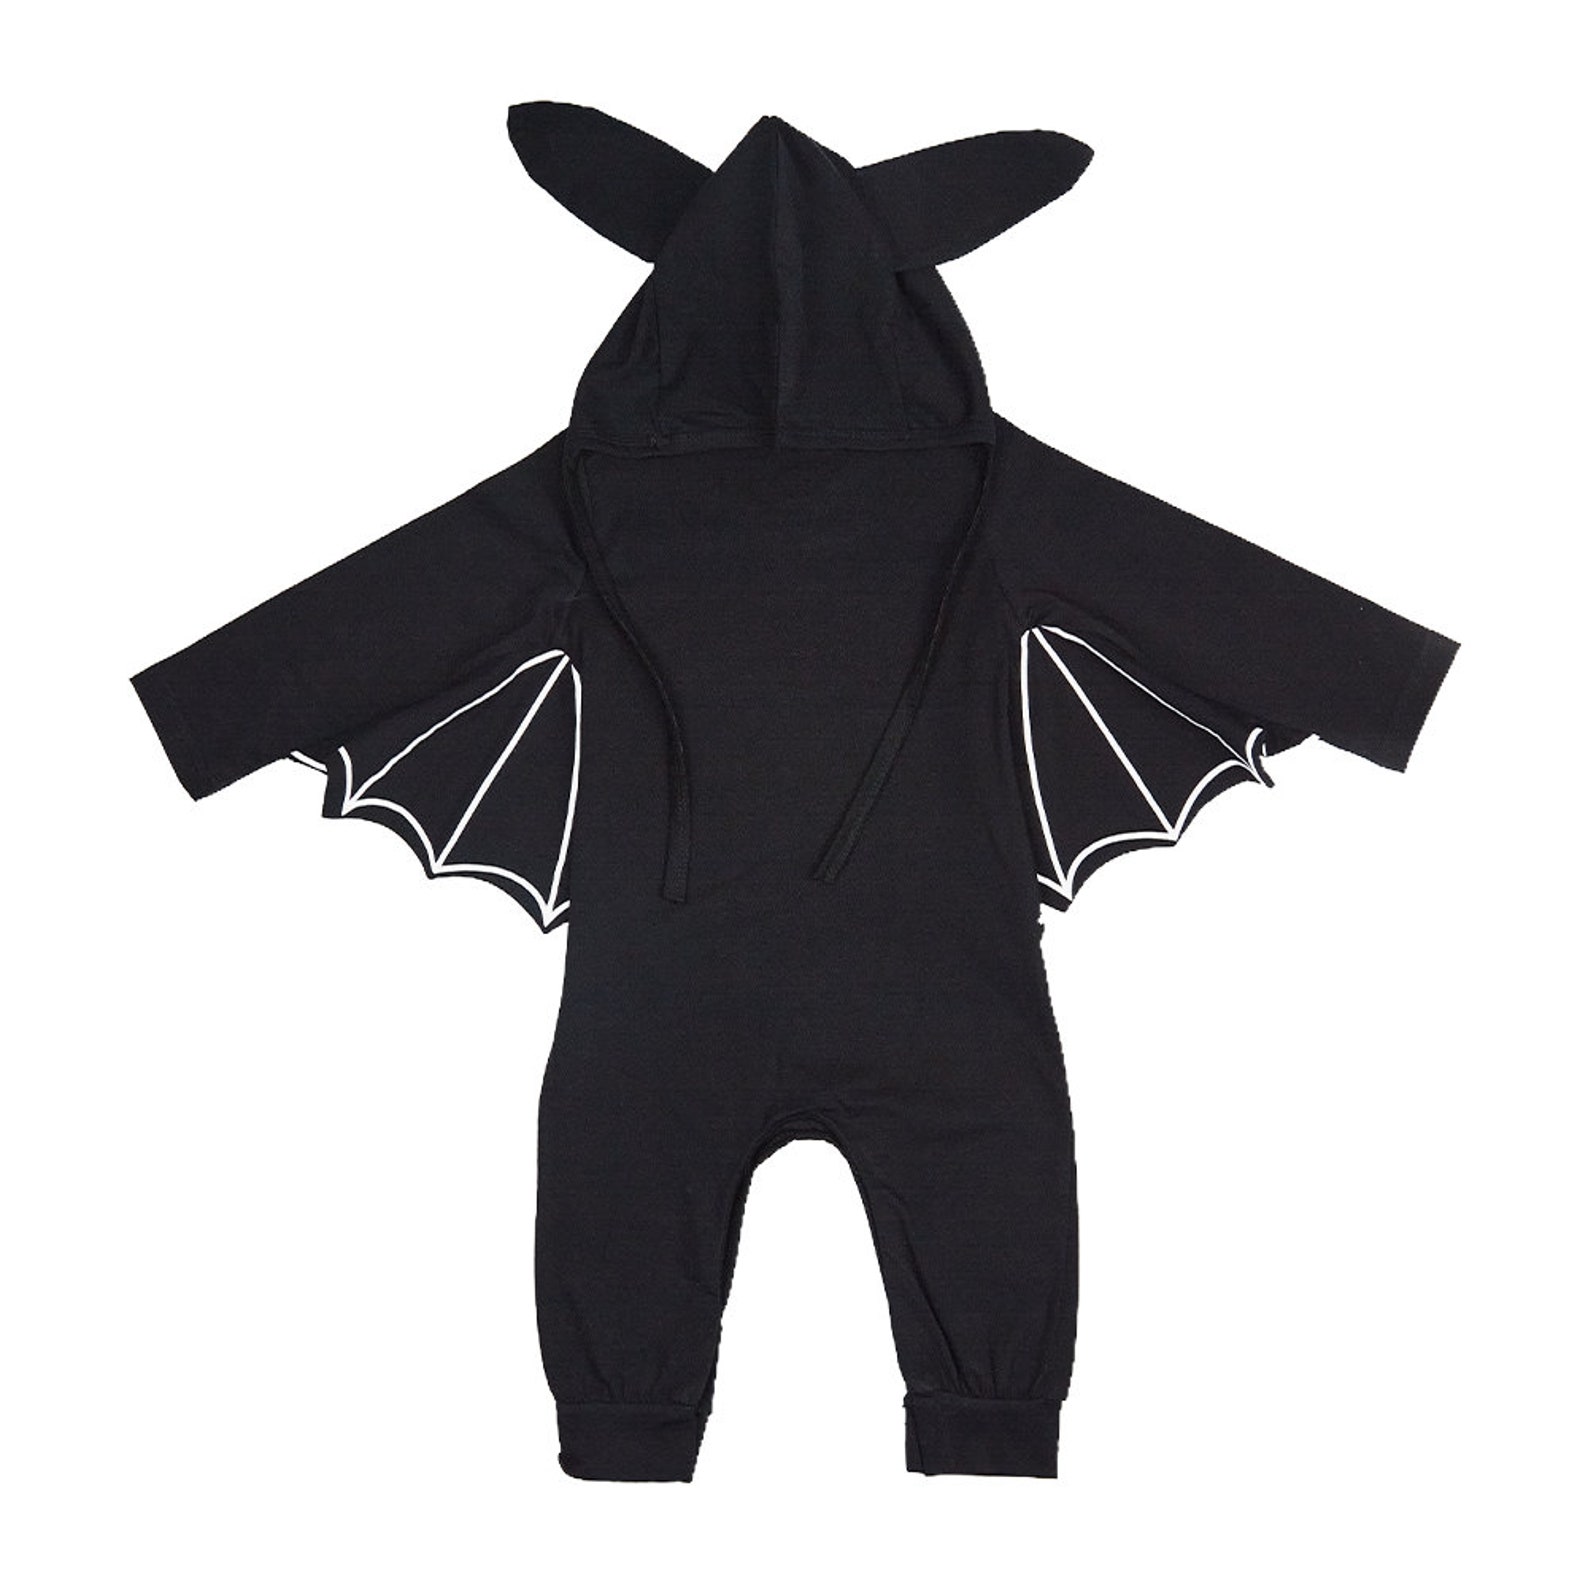 Gothic Baby Bodysuit Gothic Baby Clothes Baby Bat Costume | Etsy